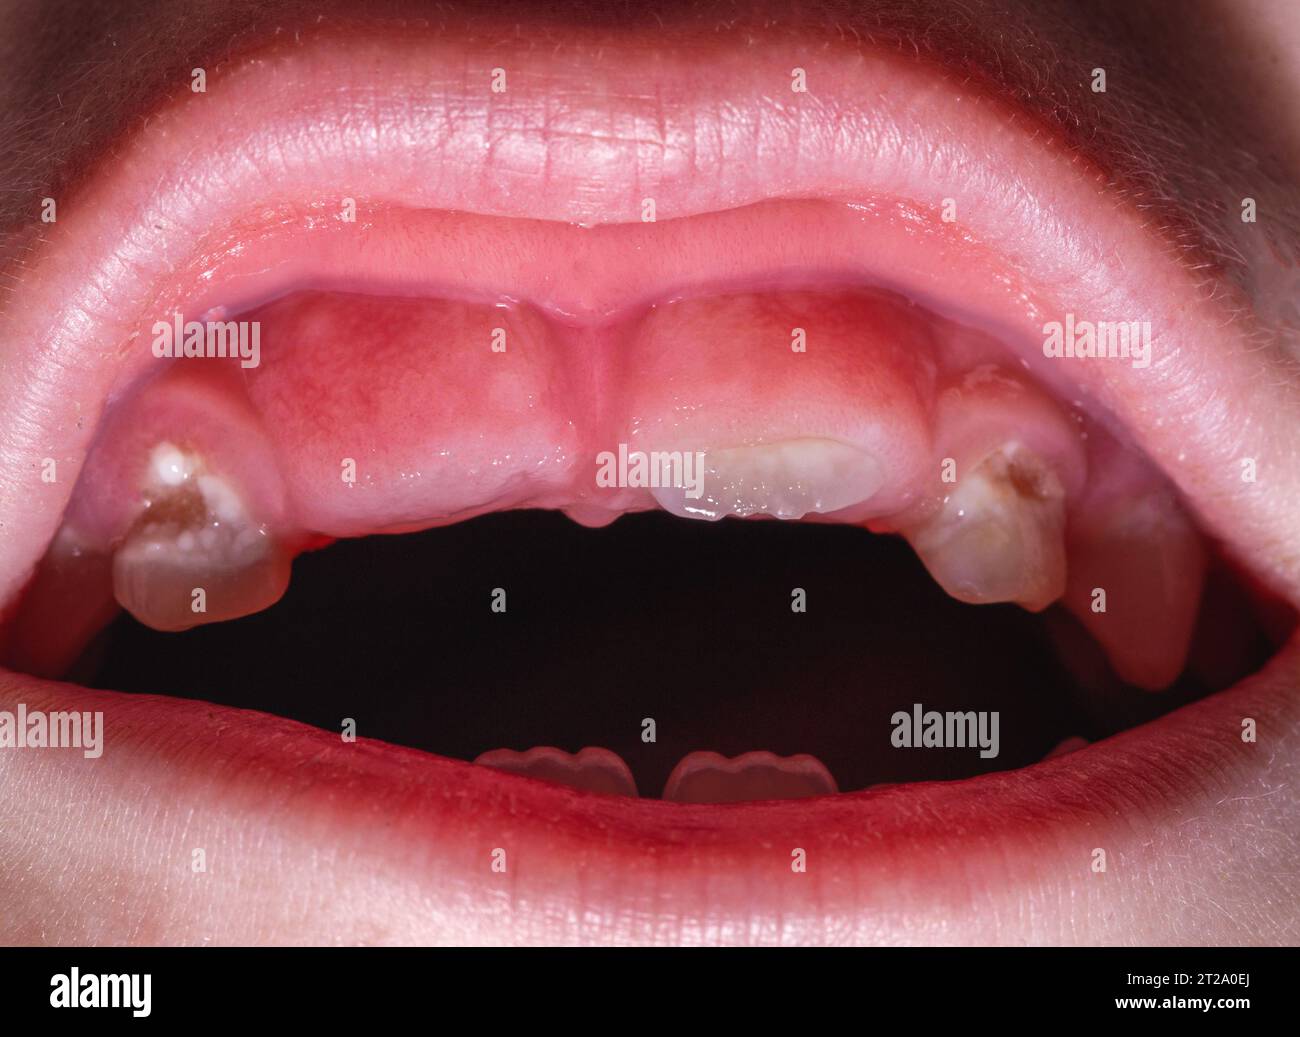 L'éruption d'une dent permanente après la perte d'une dent de lait chez un enfant, gros plan. Dentisterie pour enfants. Macro Banque D'Images